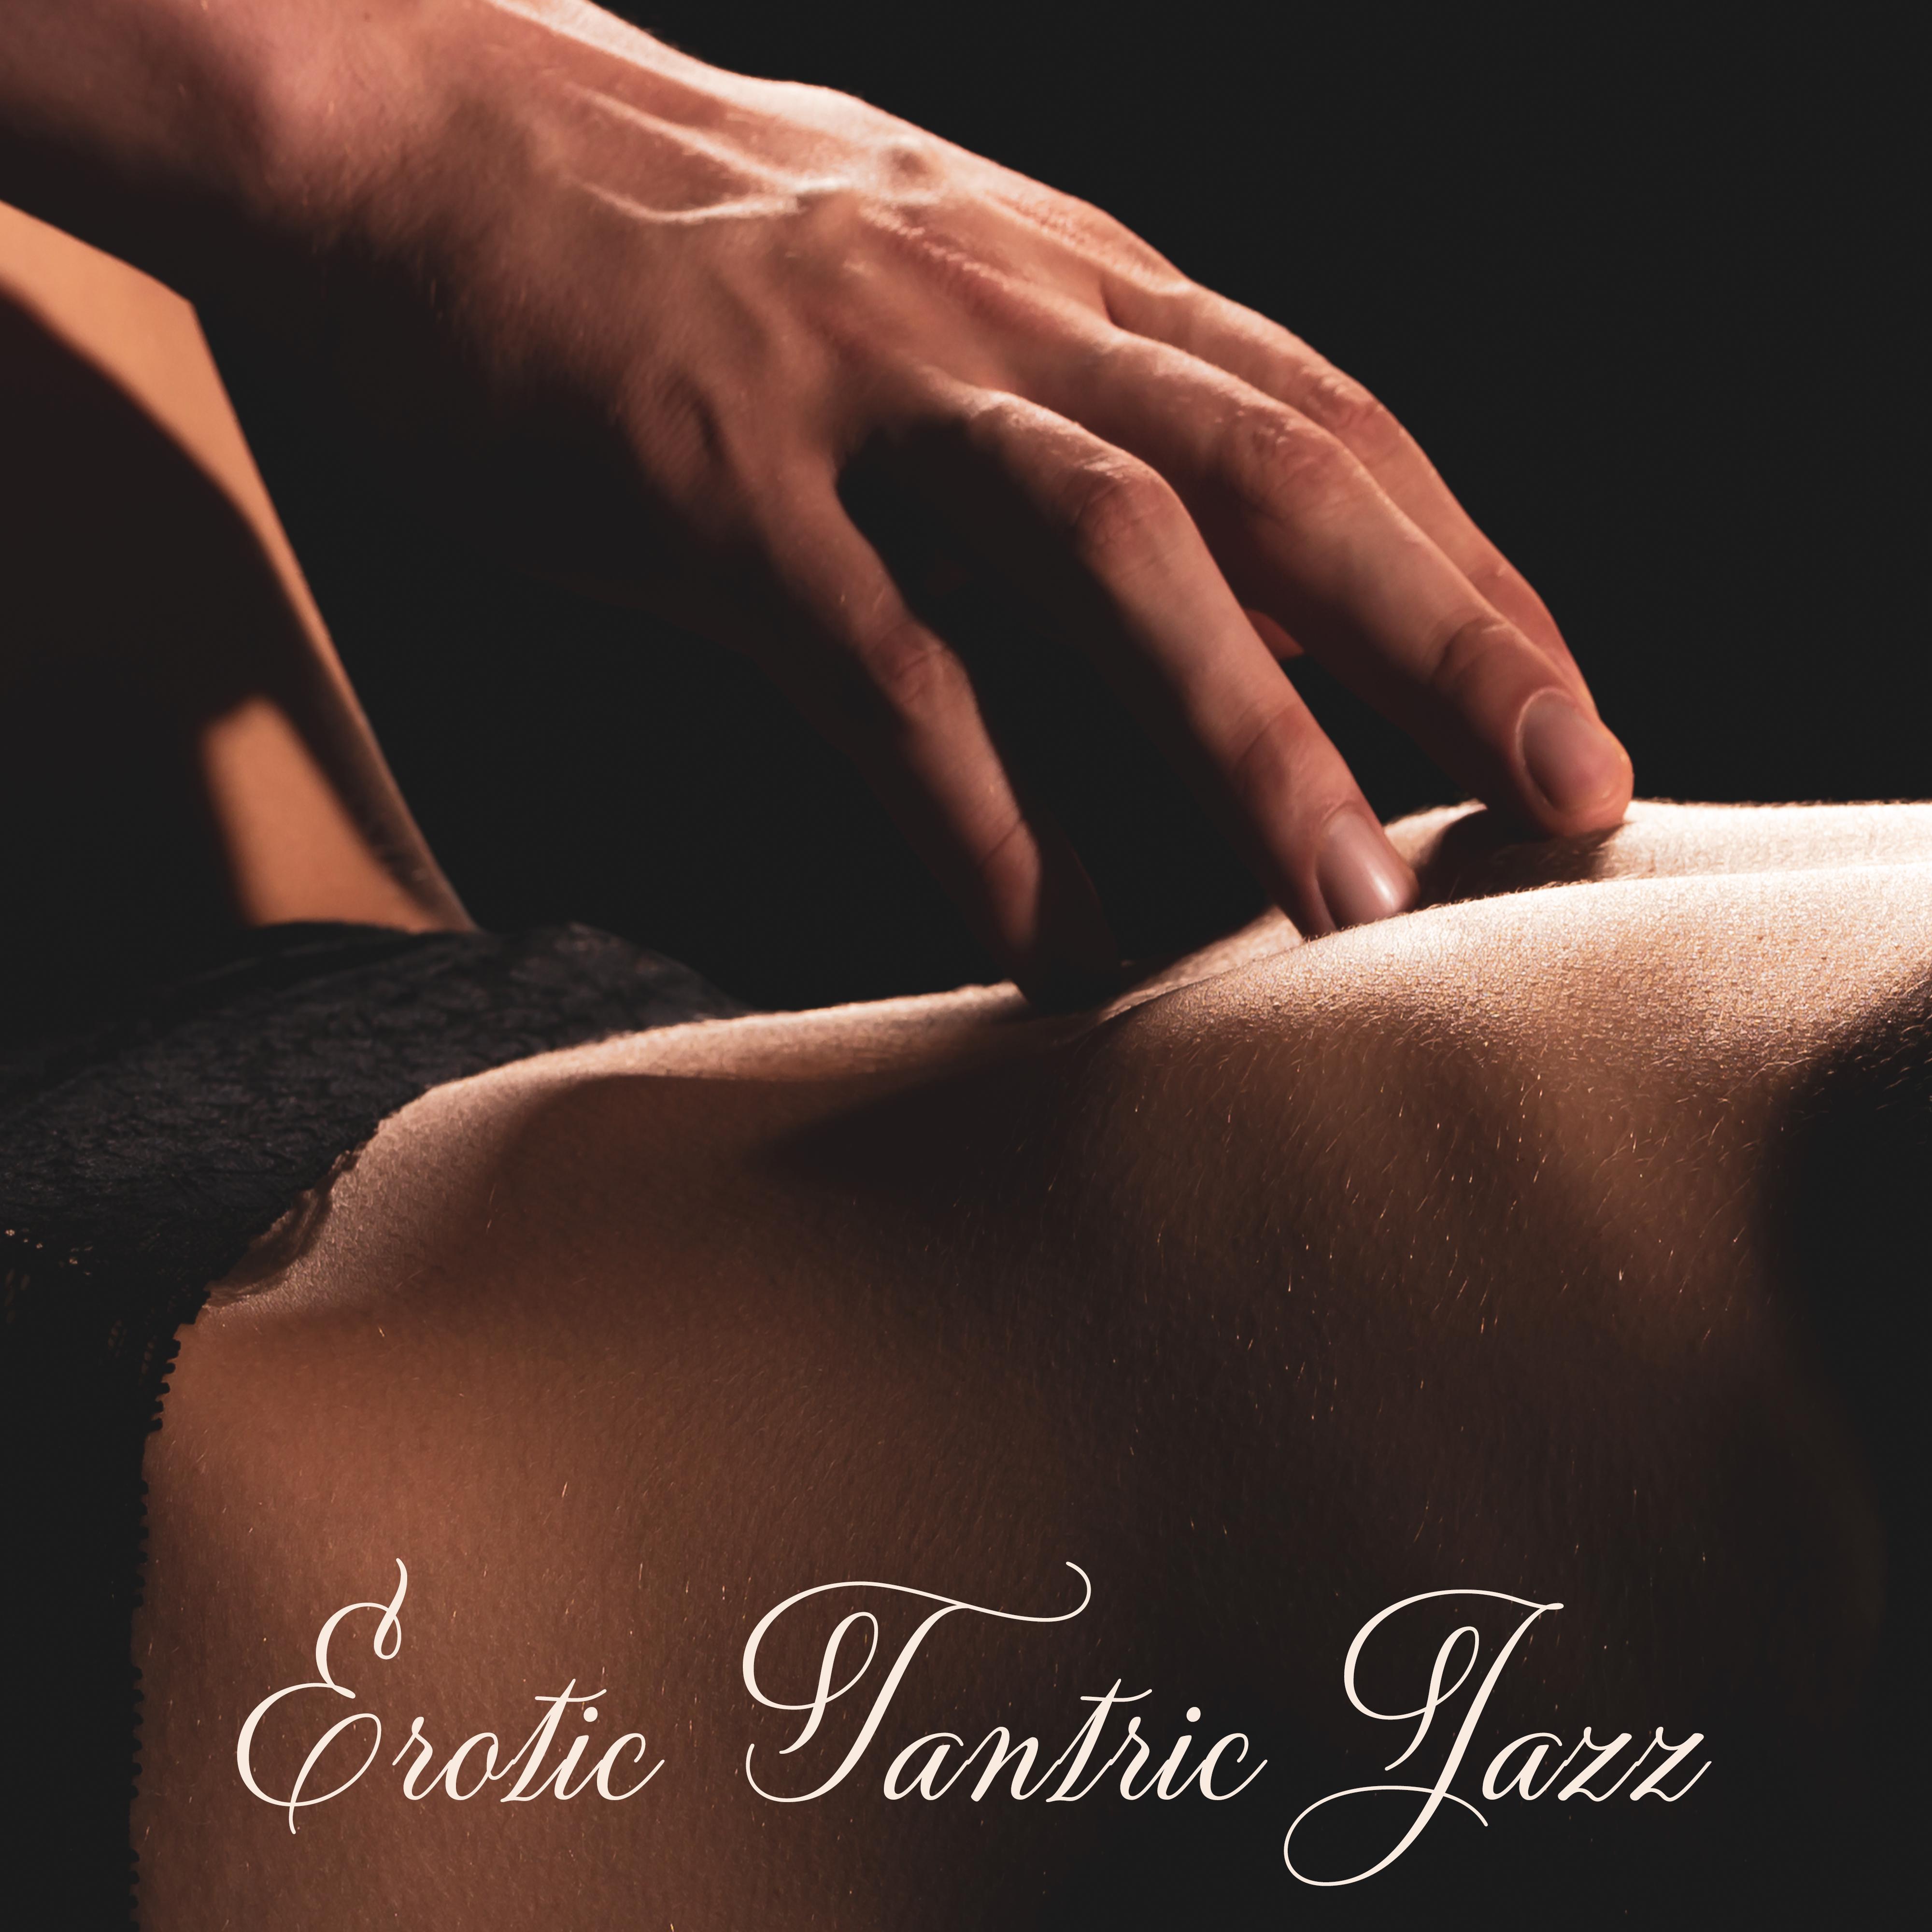 Erotic Tantric Jazz – Jazz for Making Love